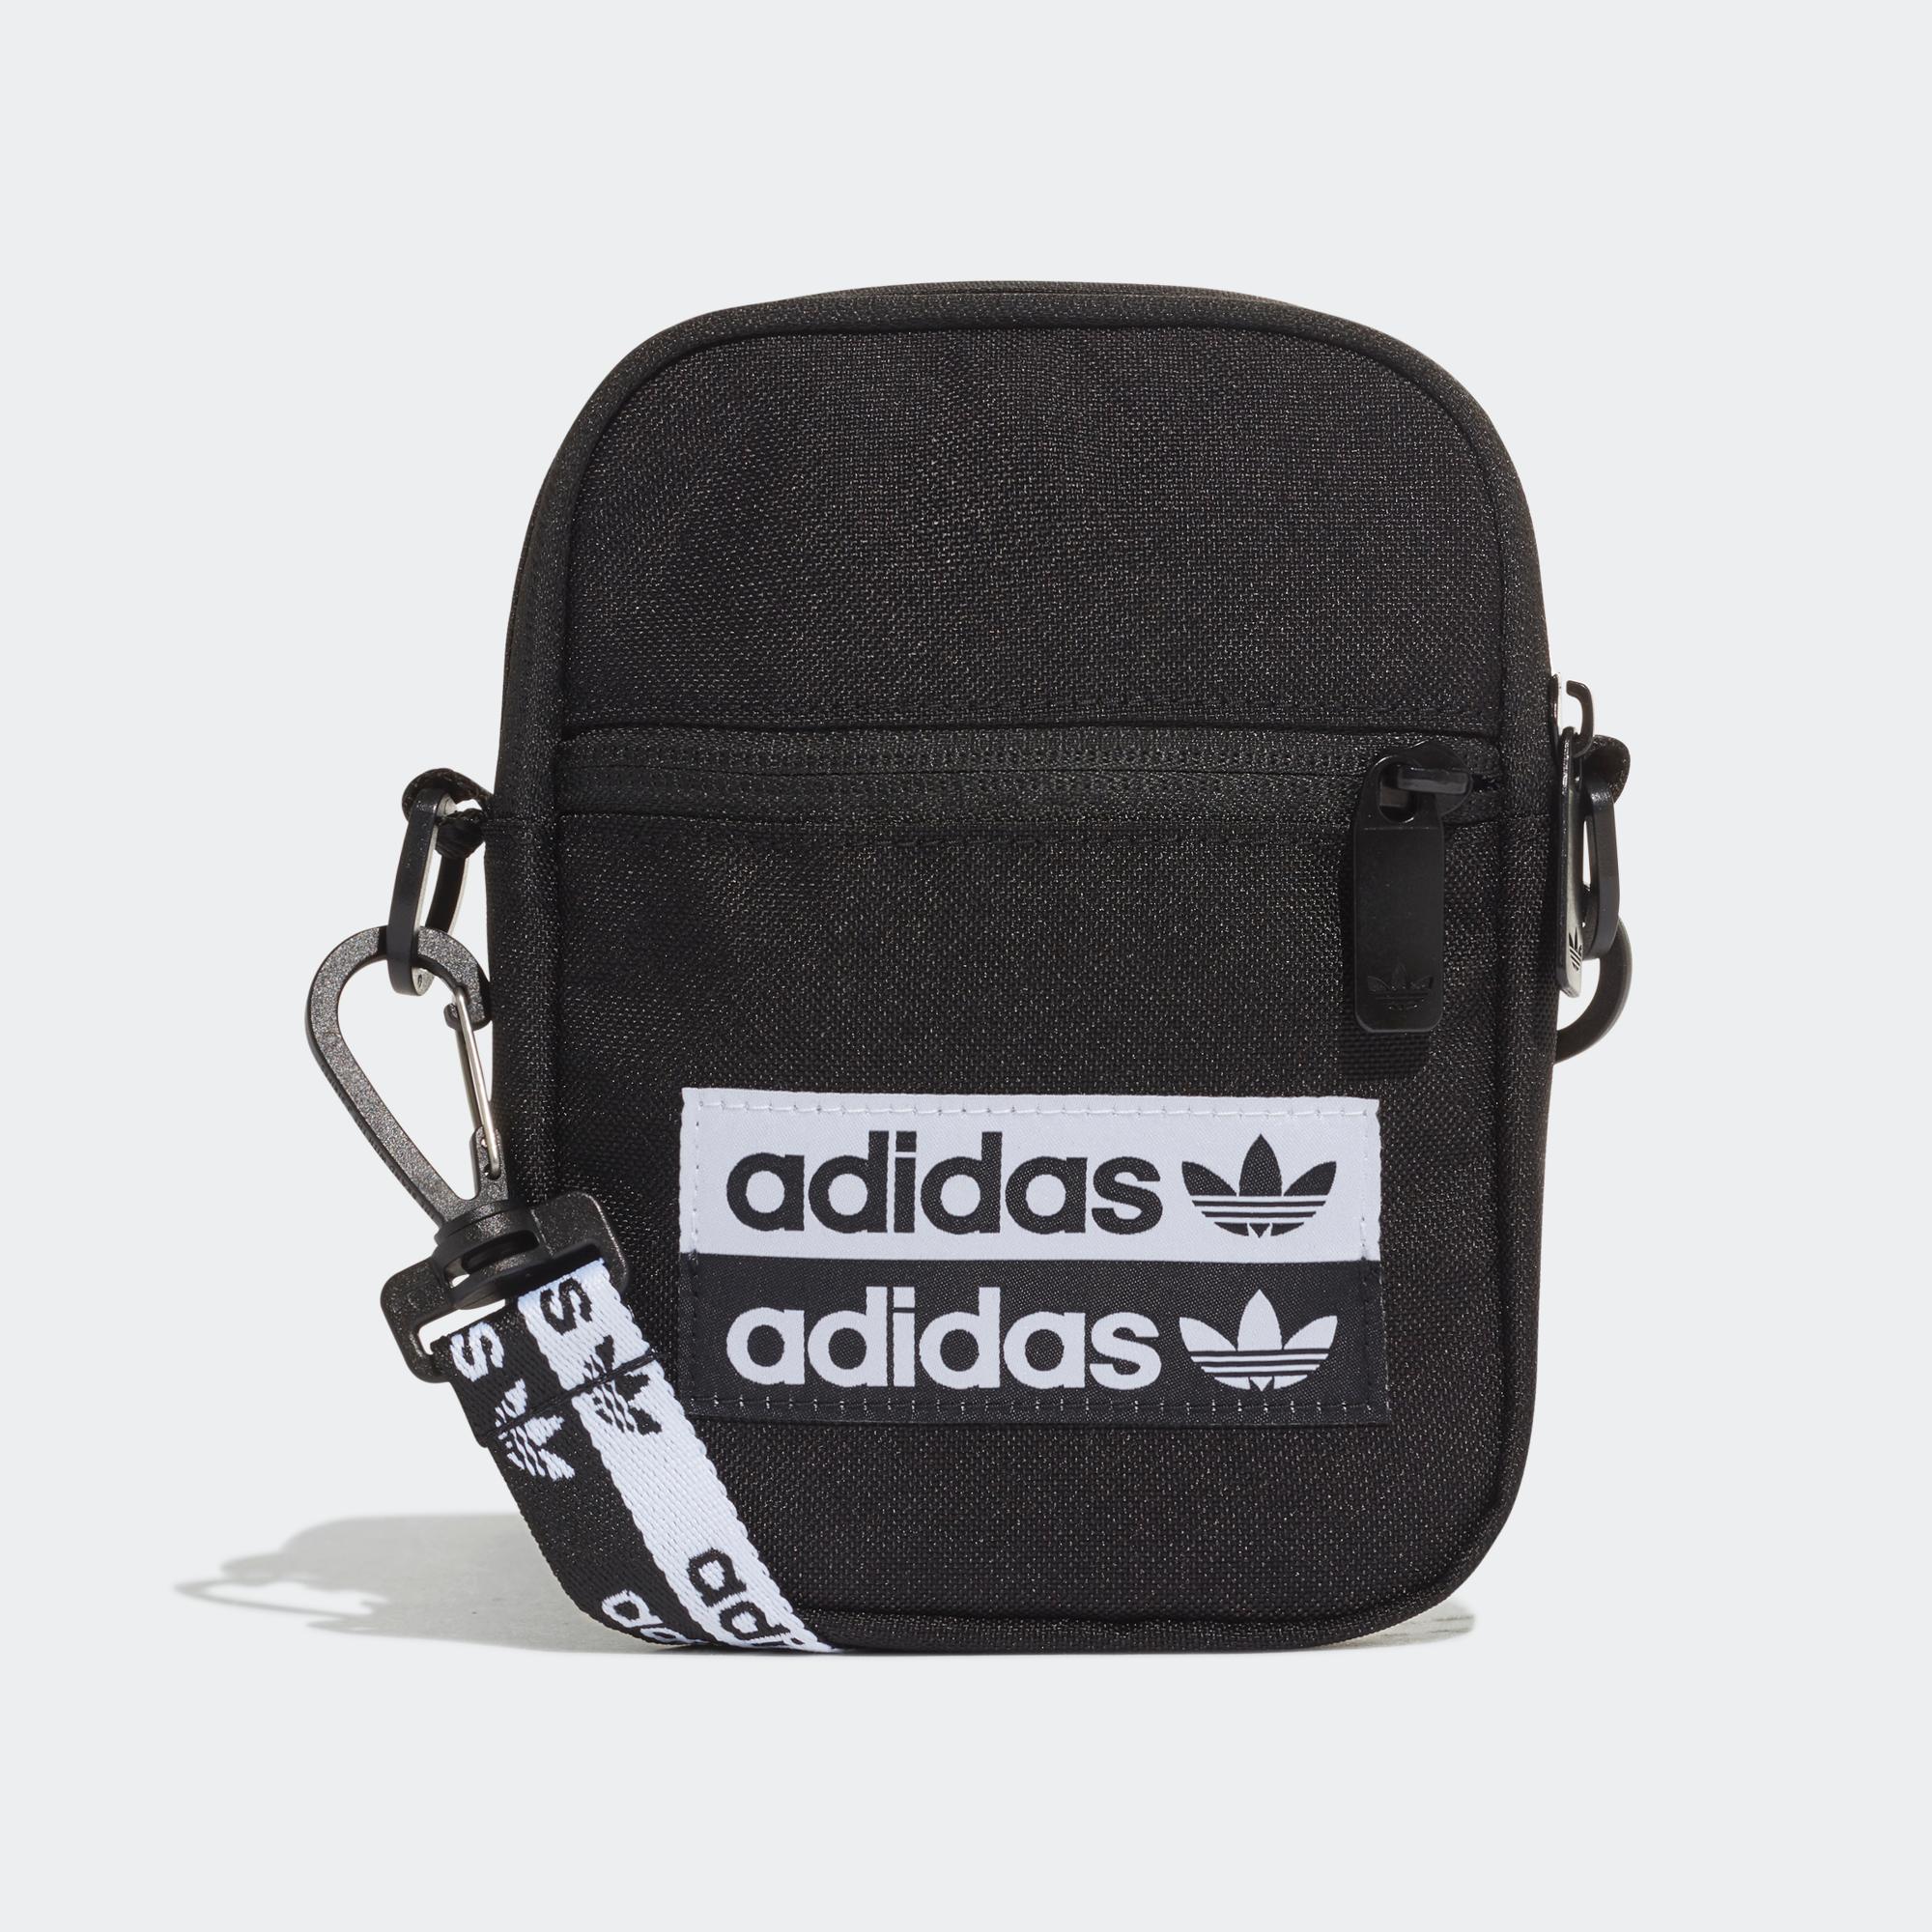 斜揹袋- 黑色| 女子,男子| adidas(愛迪達)香港官方網上商店